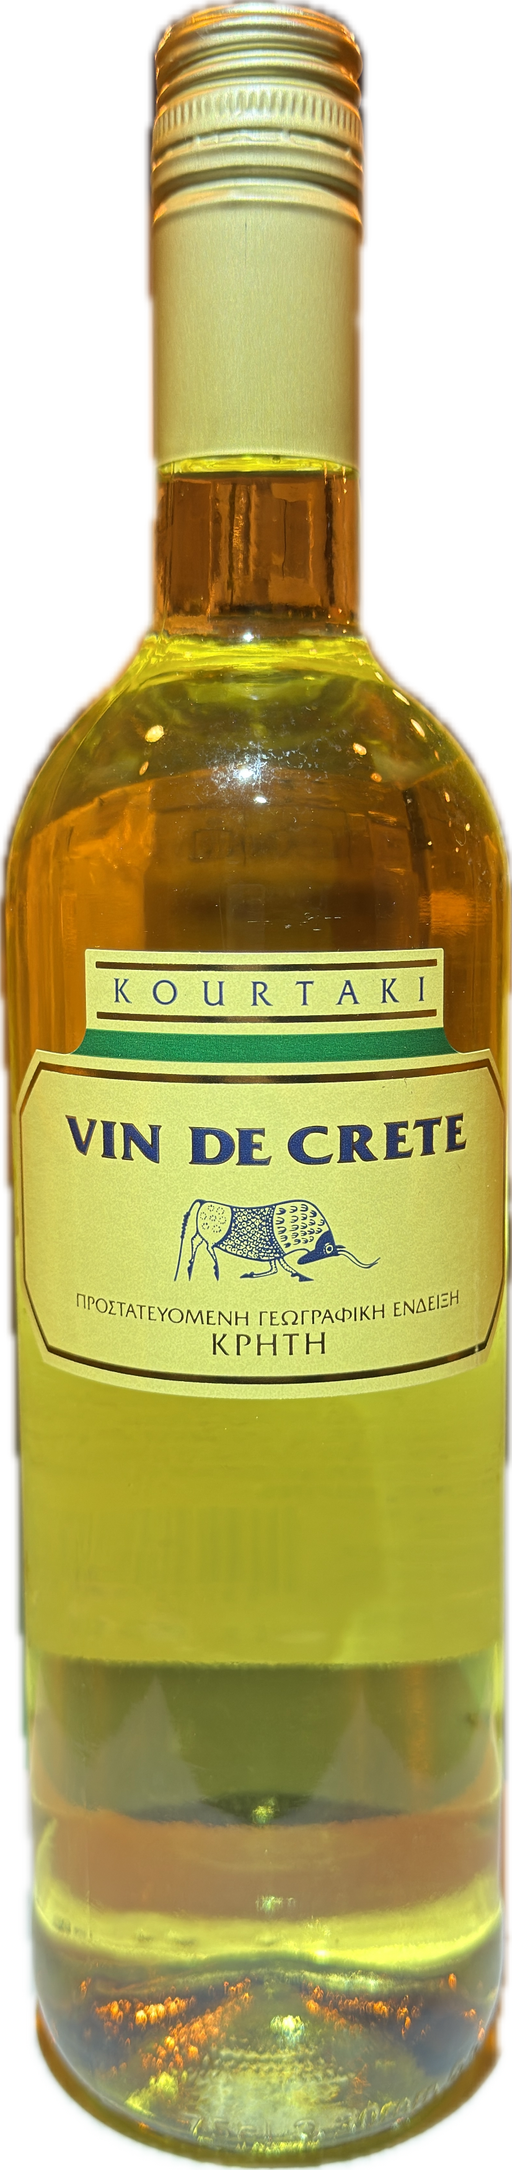 Kourtaki Vin de crete white 2018